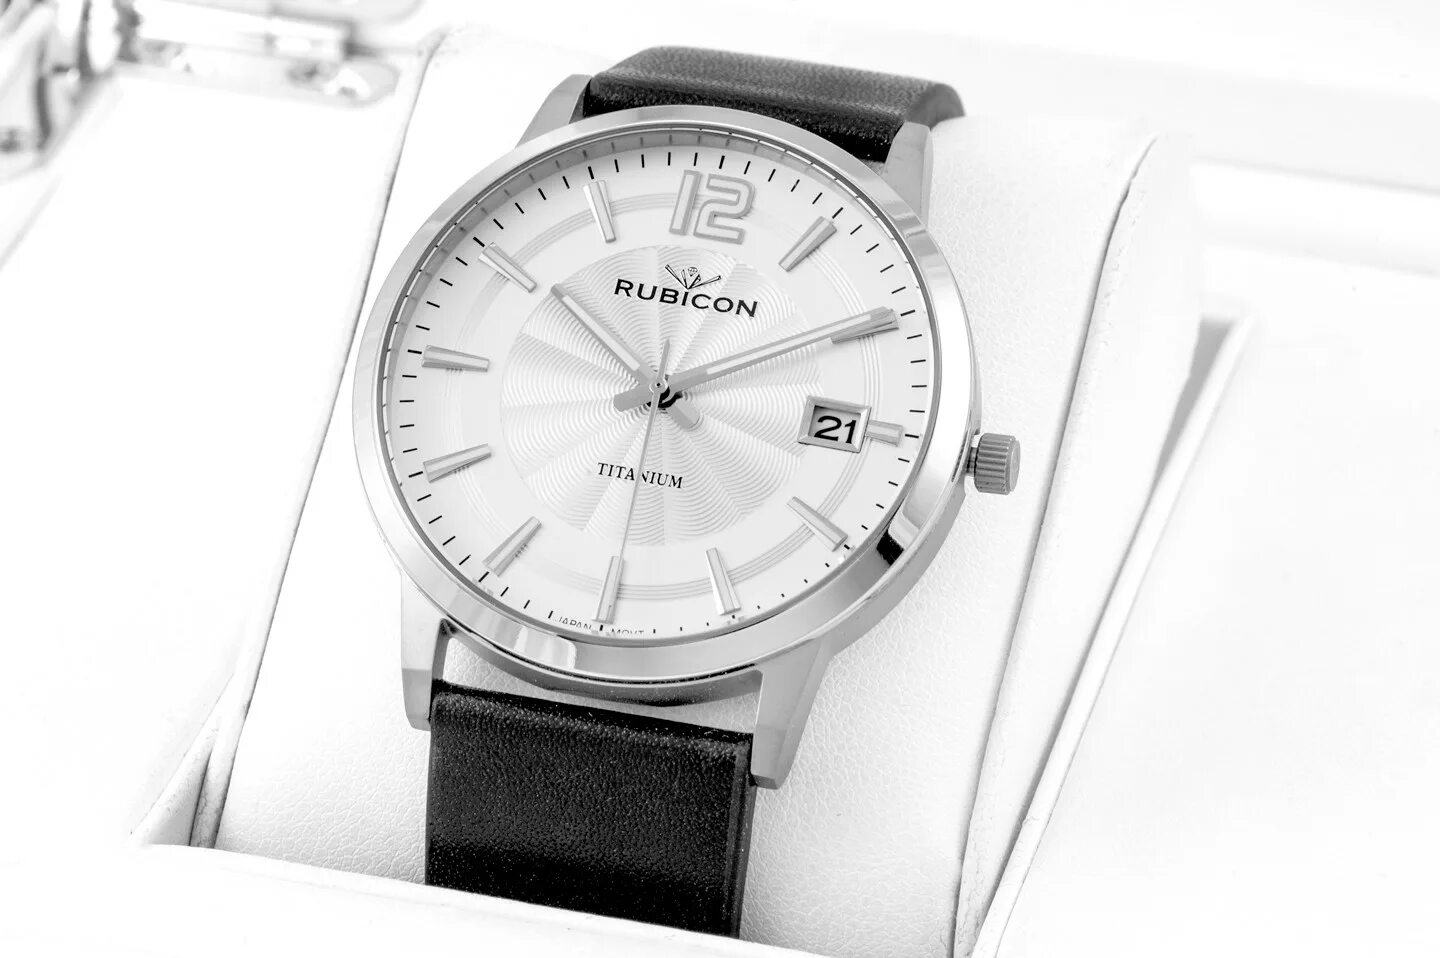 Rubicon часы. Rubicon арт # 5861. Часы Rubicon rnbd80. Японские часы Рубикон. Часы без предоплаты